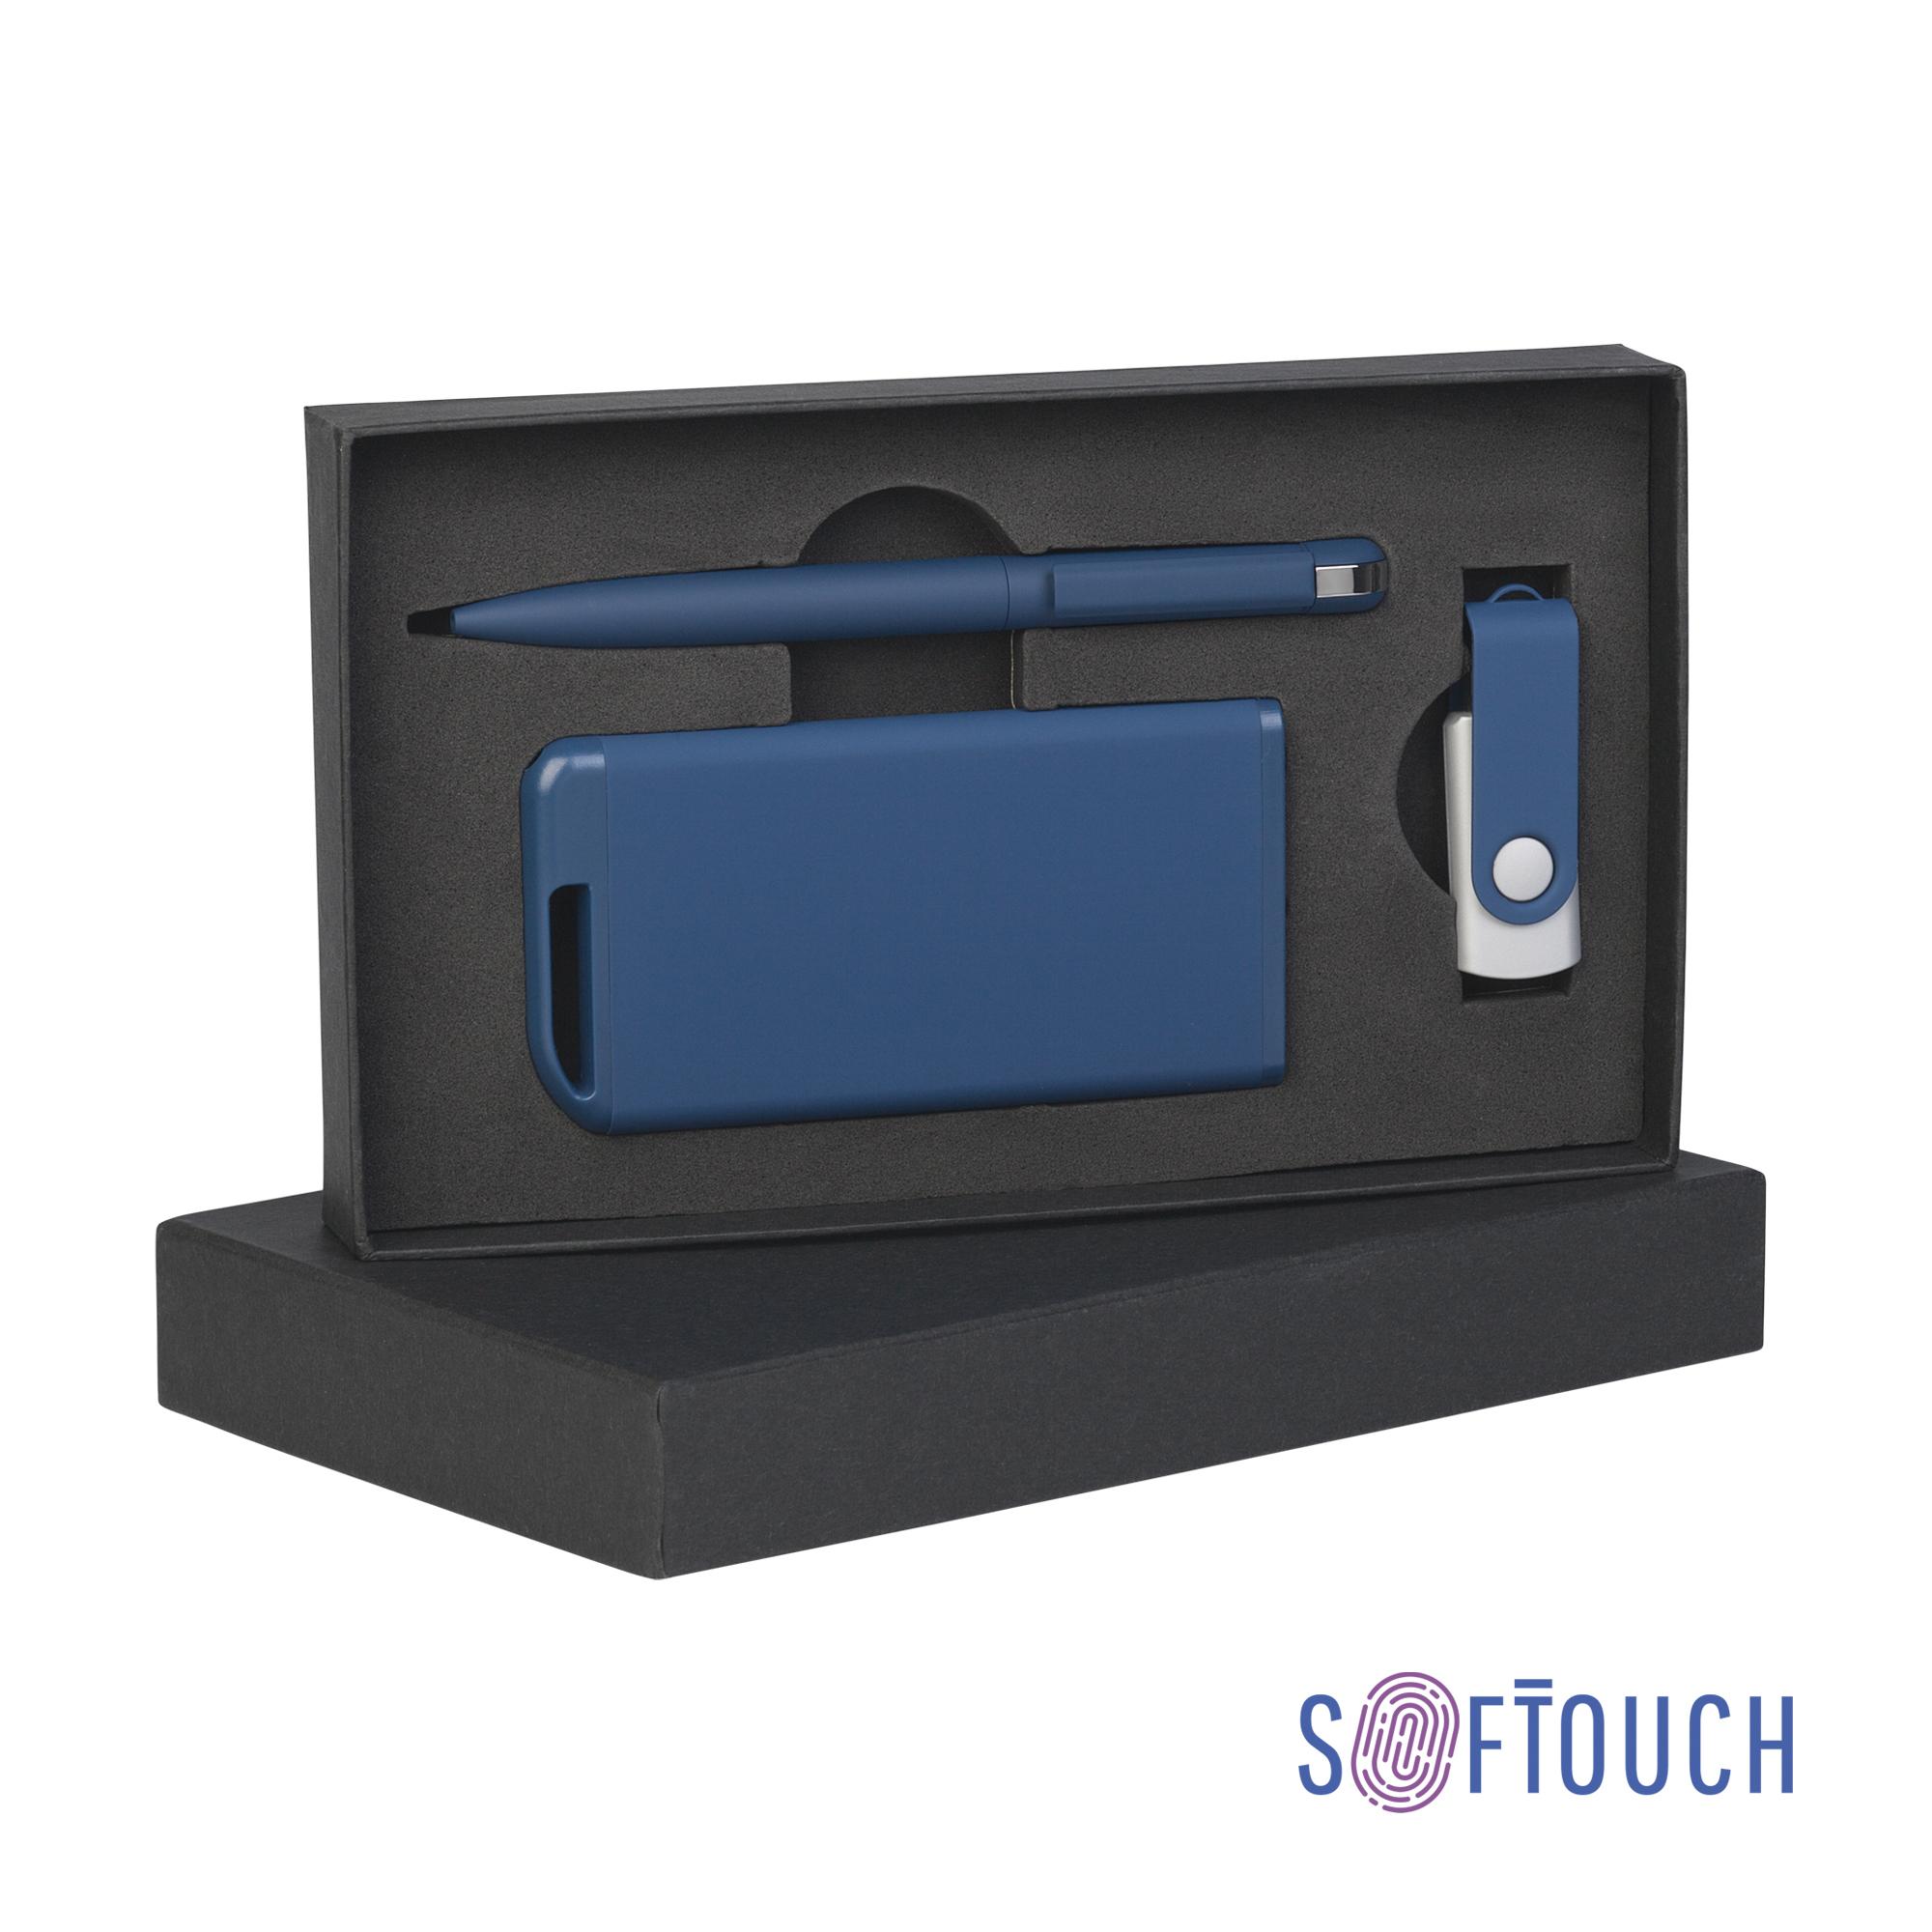 Набор ручка + флеш-карта 8Гб + зарядное устройство 4000 mAh в футляре, soft touch, цвет темно-синий